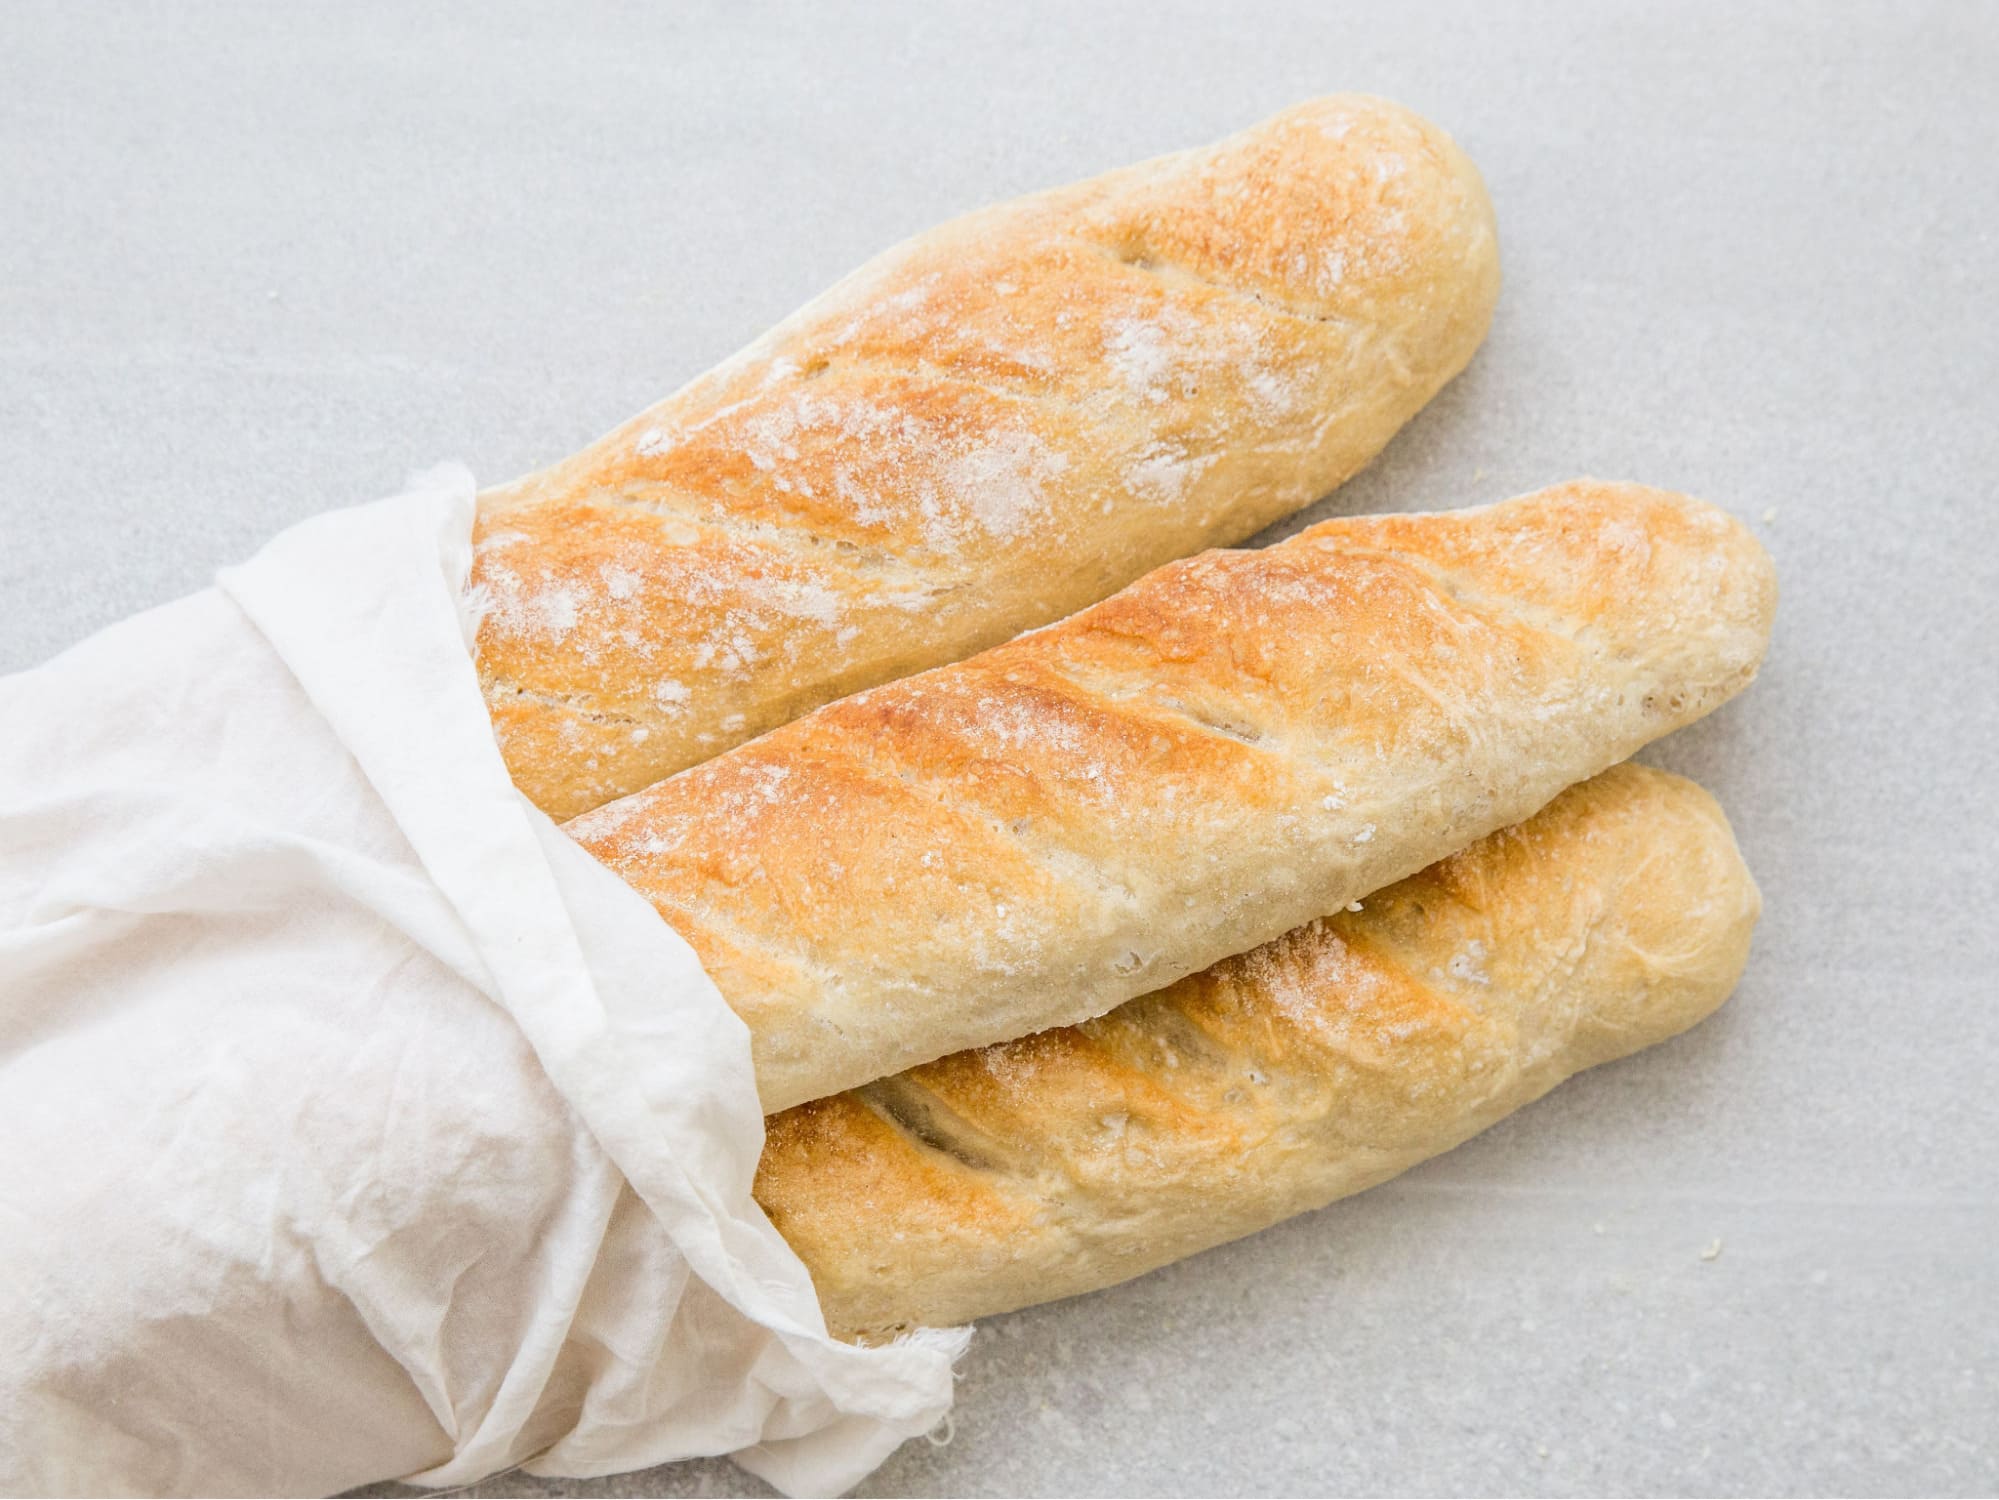 100g bánh mì không bao nhiêu calo